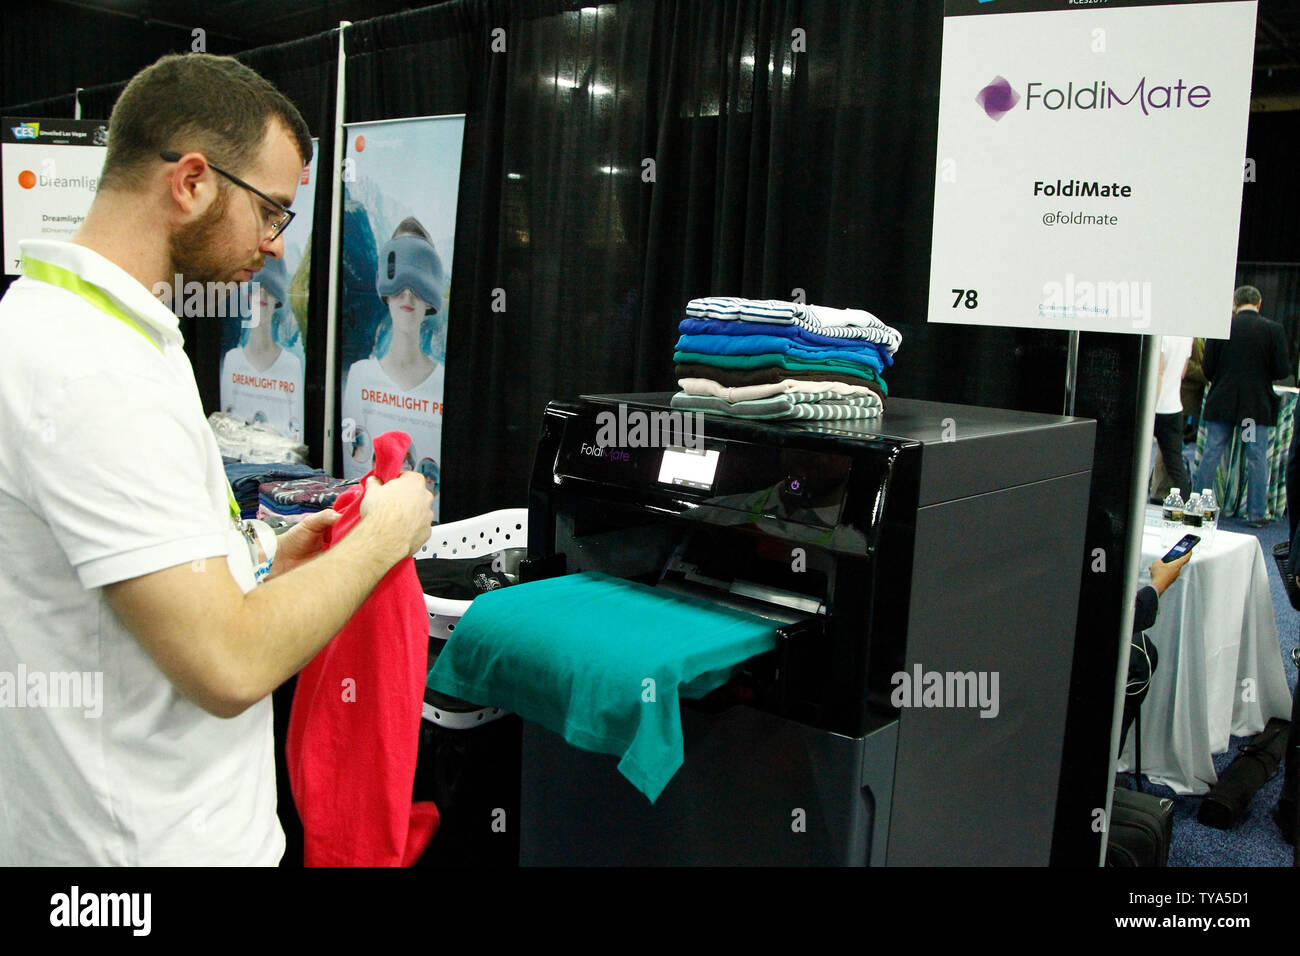 The FoldiMate, an automated shirt folding machine being